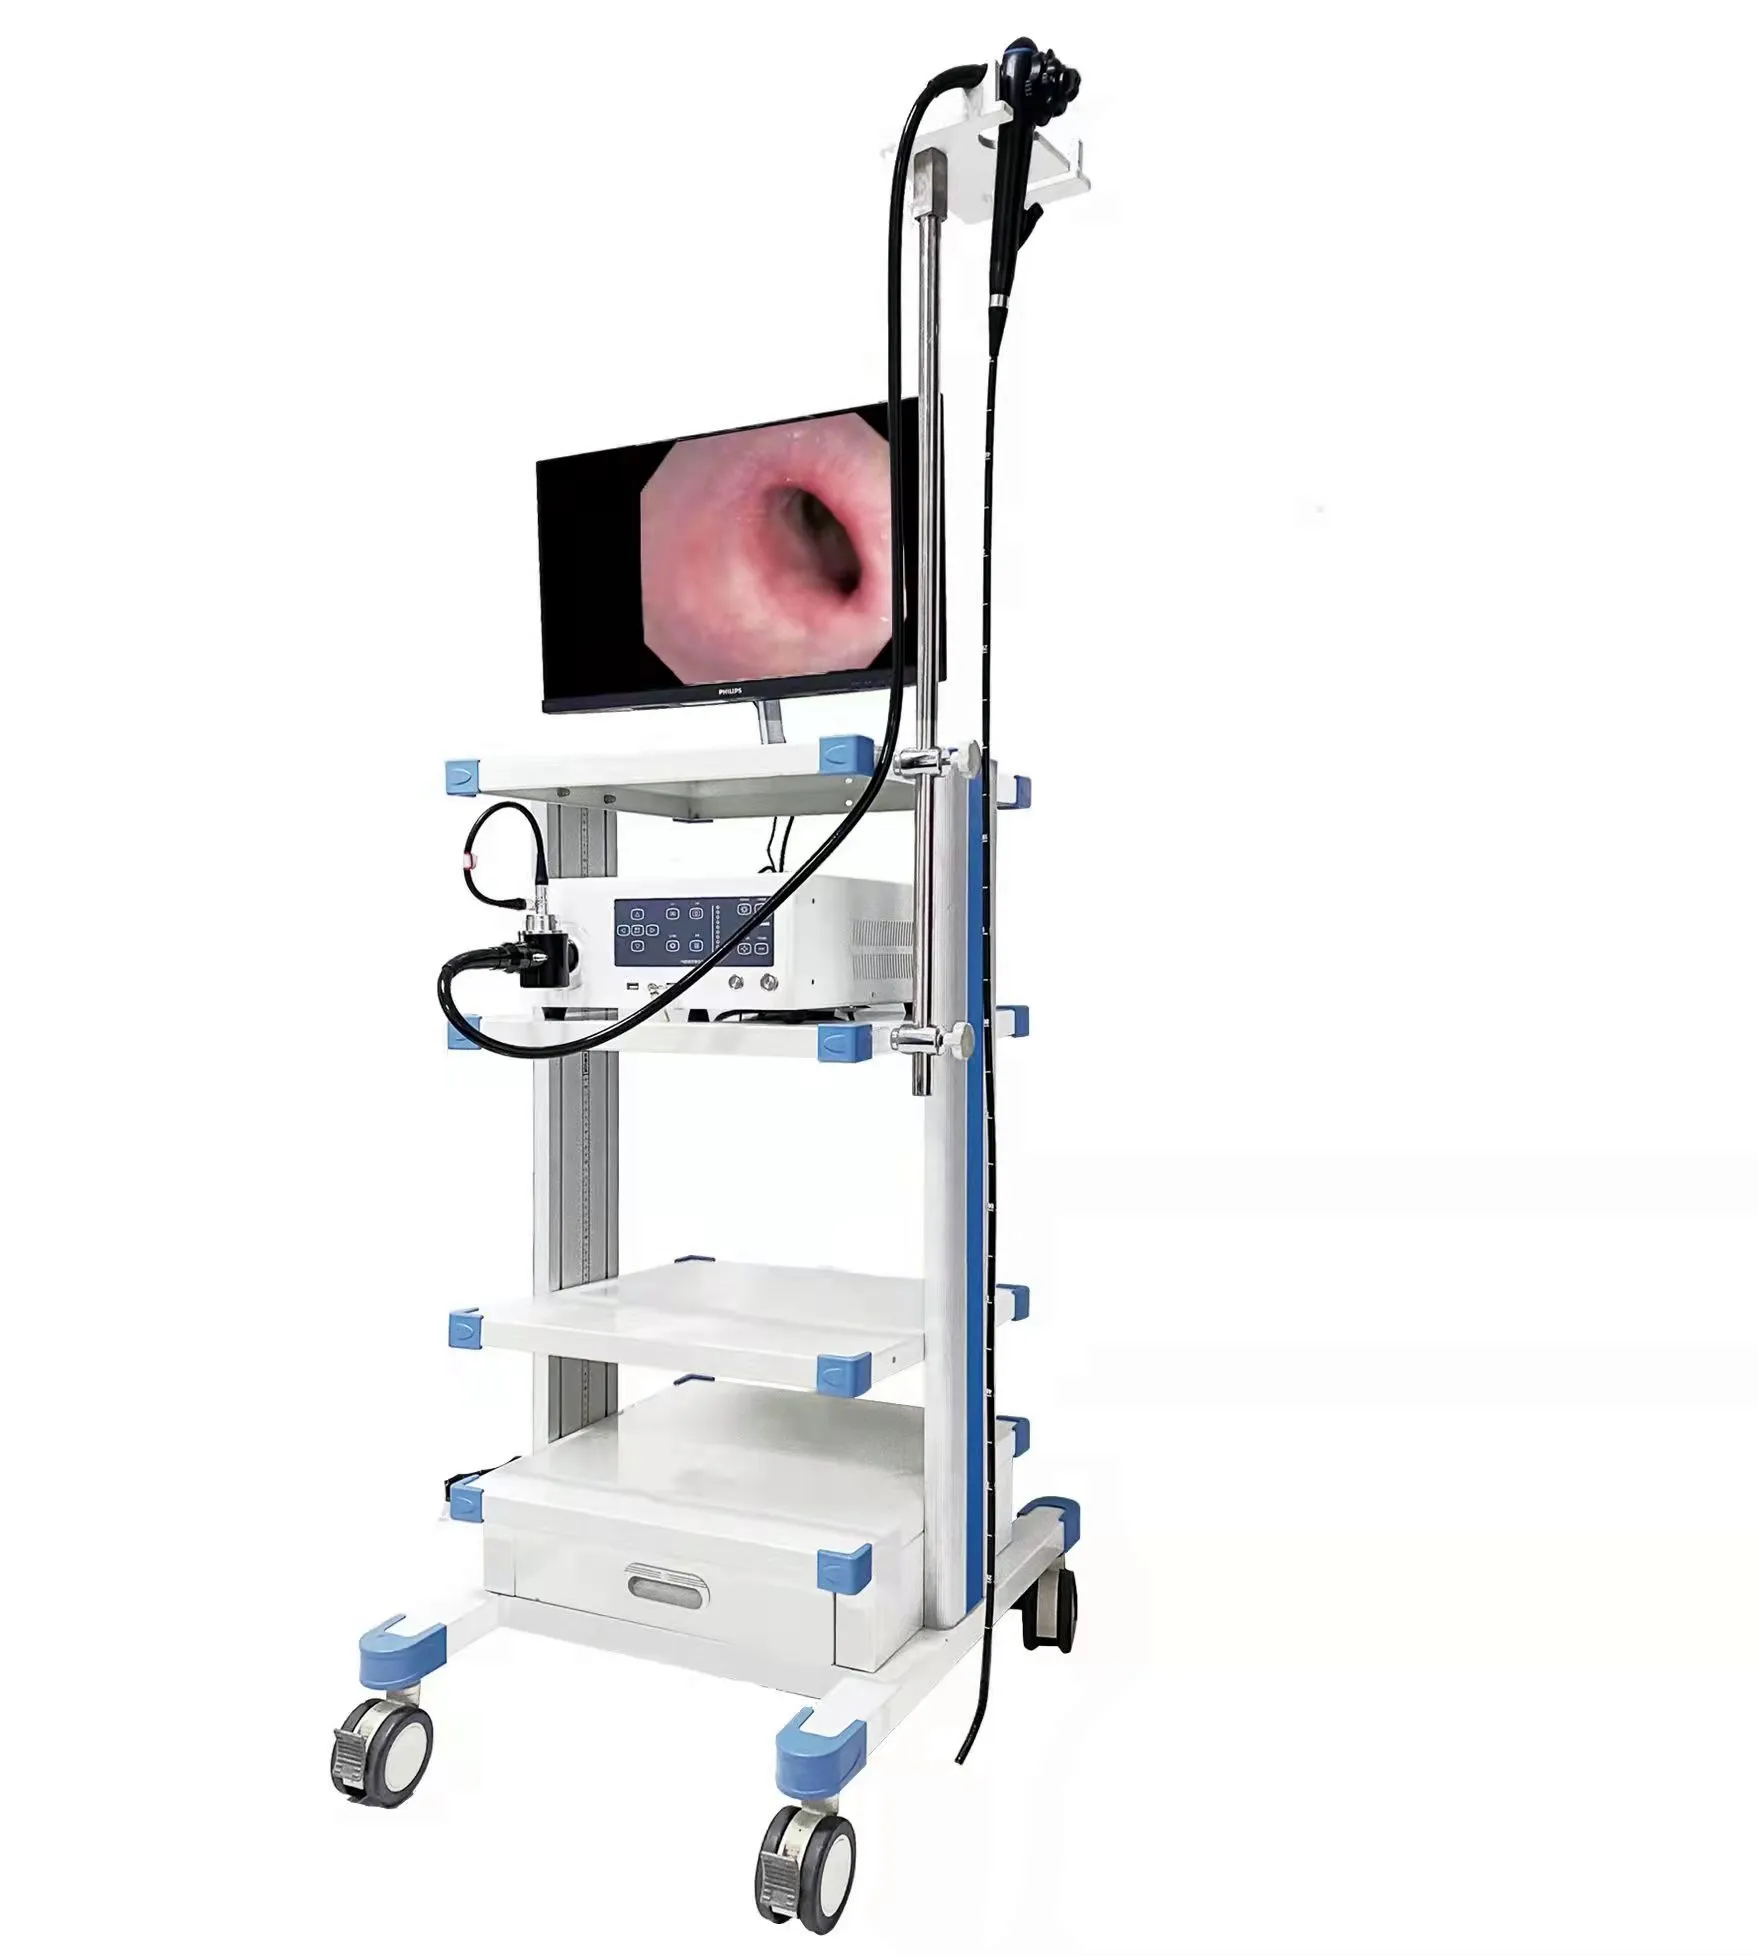 Dispositivo Médico Veterinario, endoscopio, GASTROSCOPIO electrónico, colonoscopio, vídeo